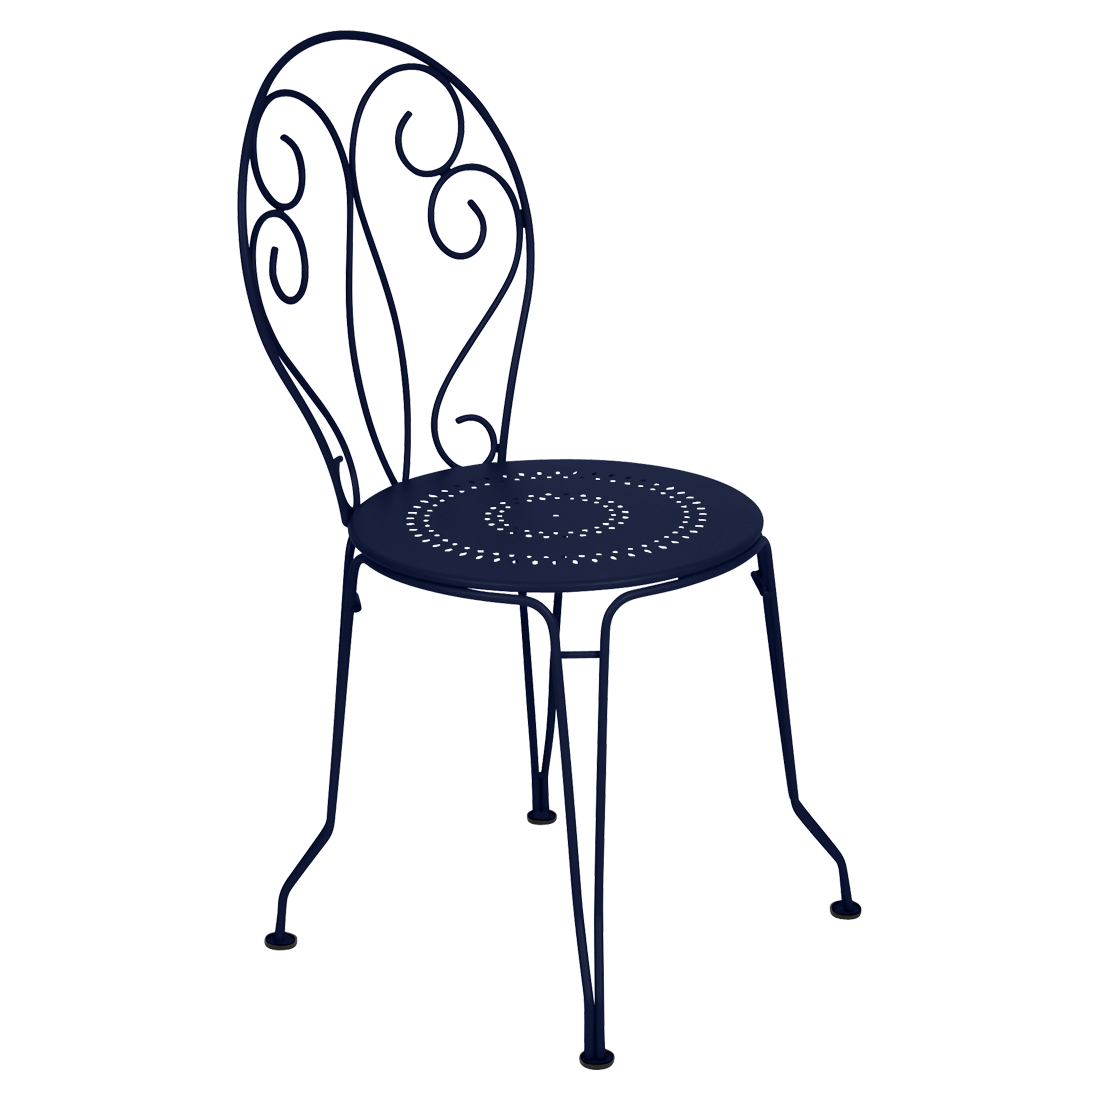 chaise metal, chaise de jardin, chaise a volute, chaise bleu